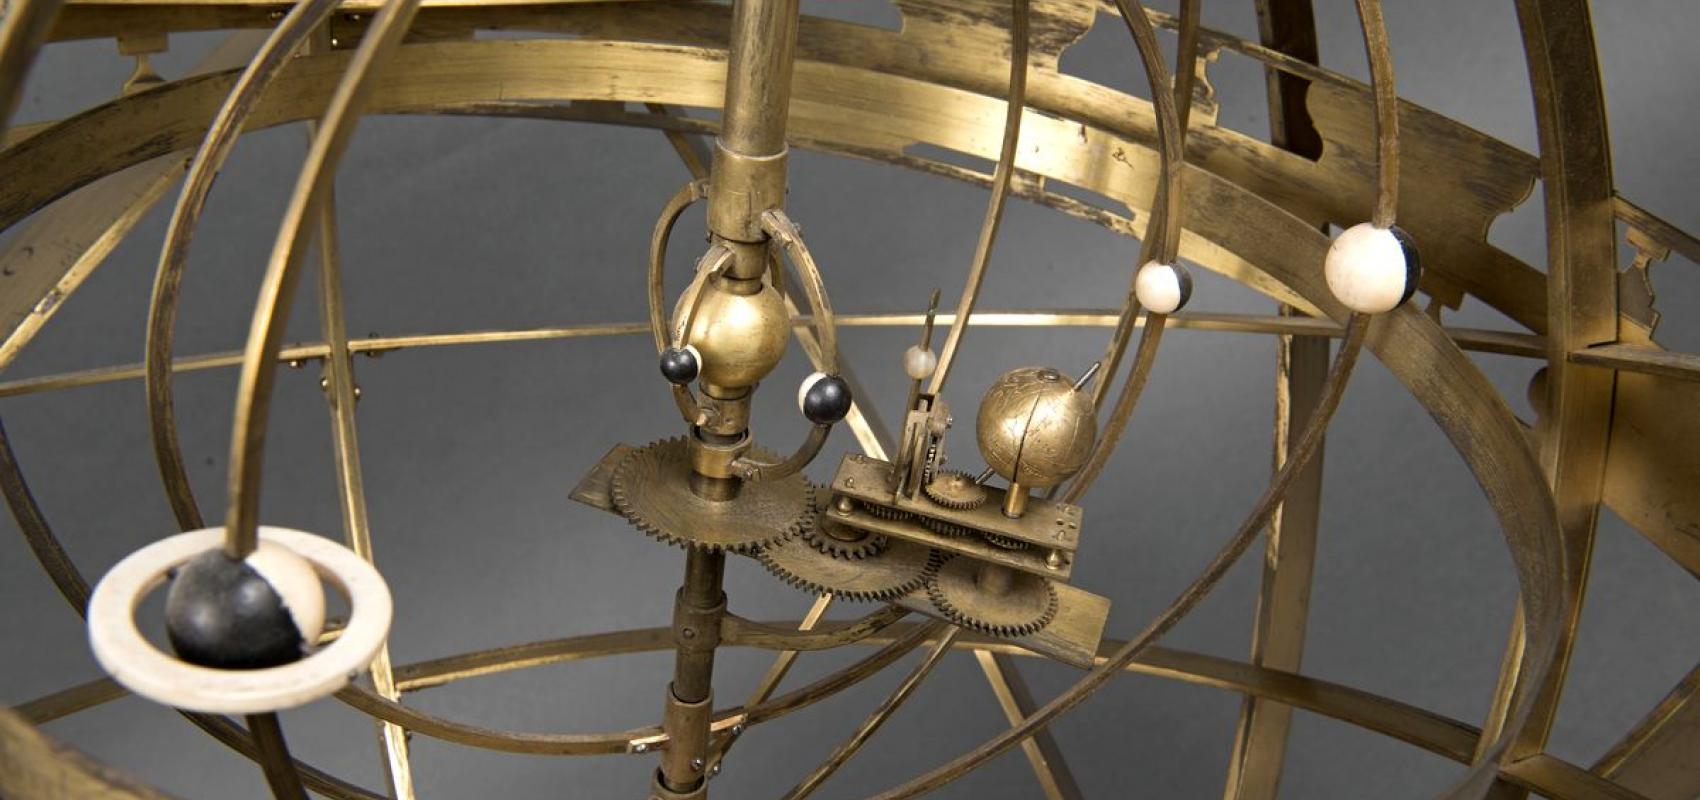 Appareil montrant le système de Copernic - 1725 - BnF, département des Cartes et plans